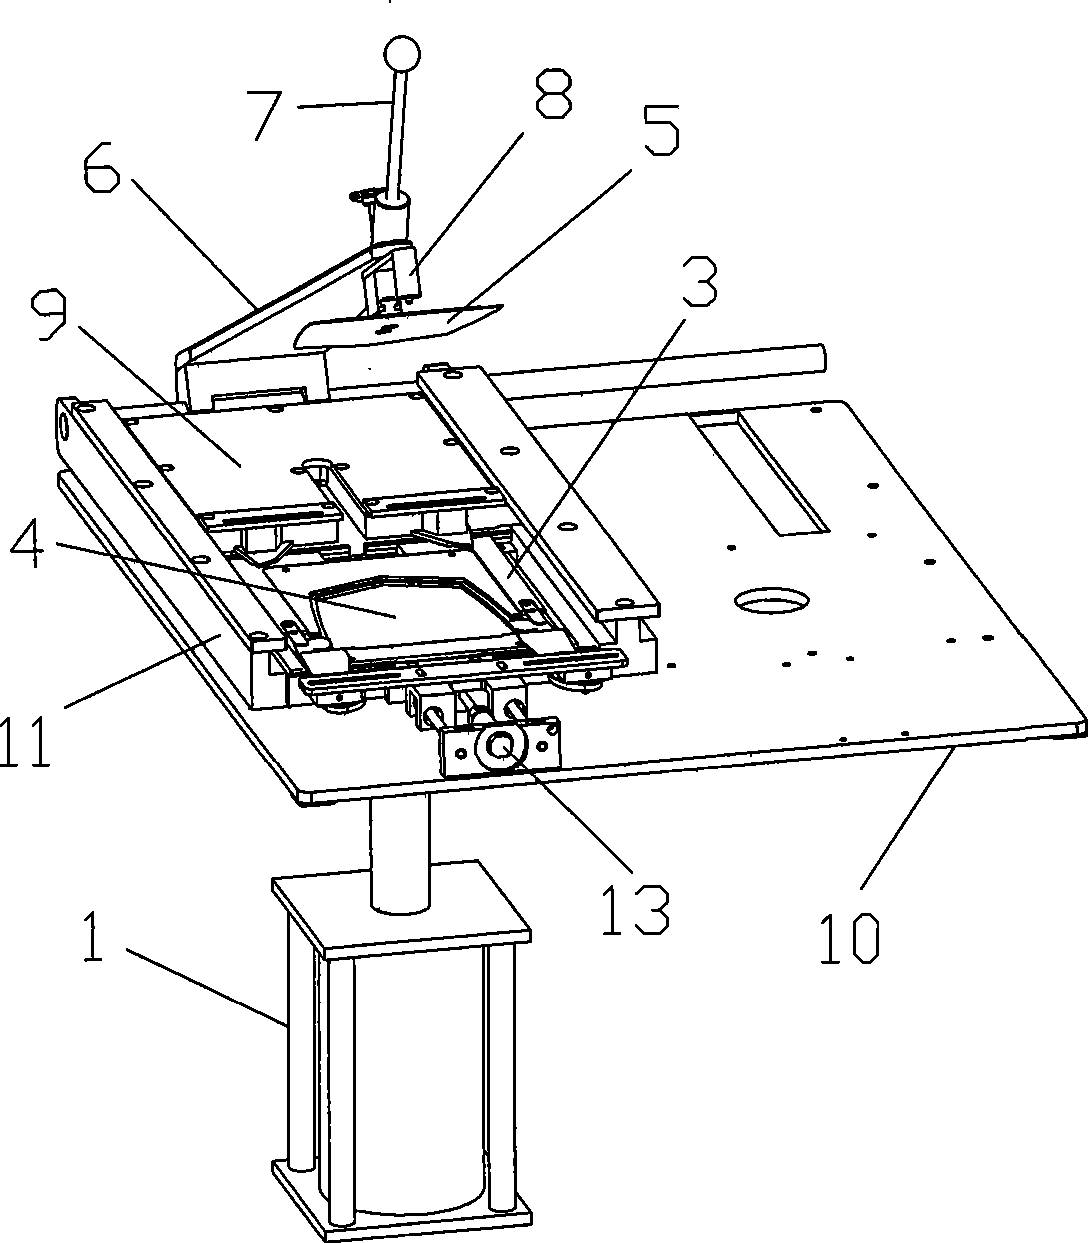 Ironing mechanism of whole ironing equipment